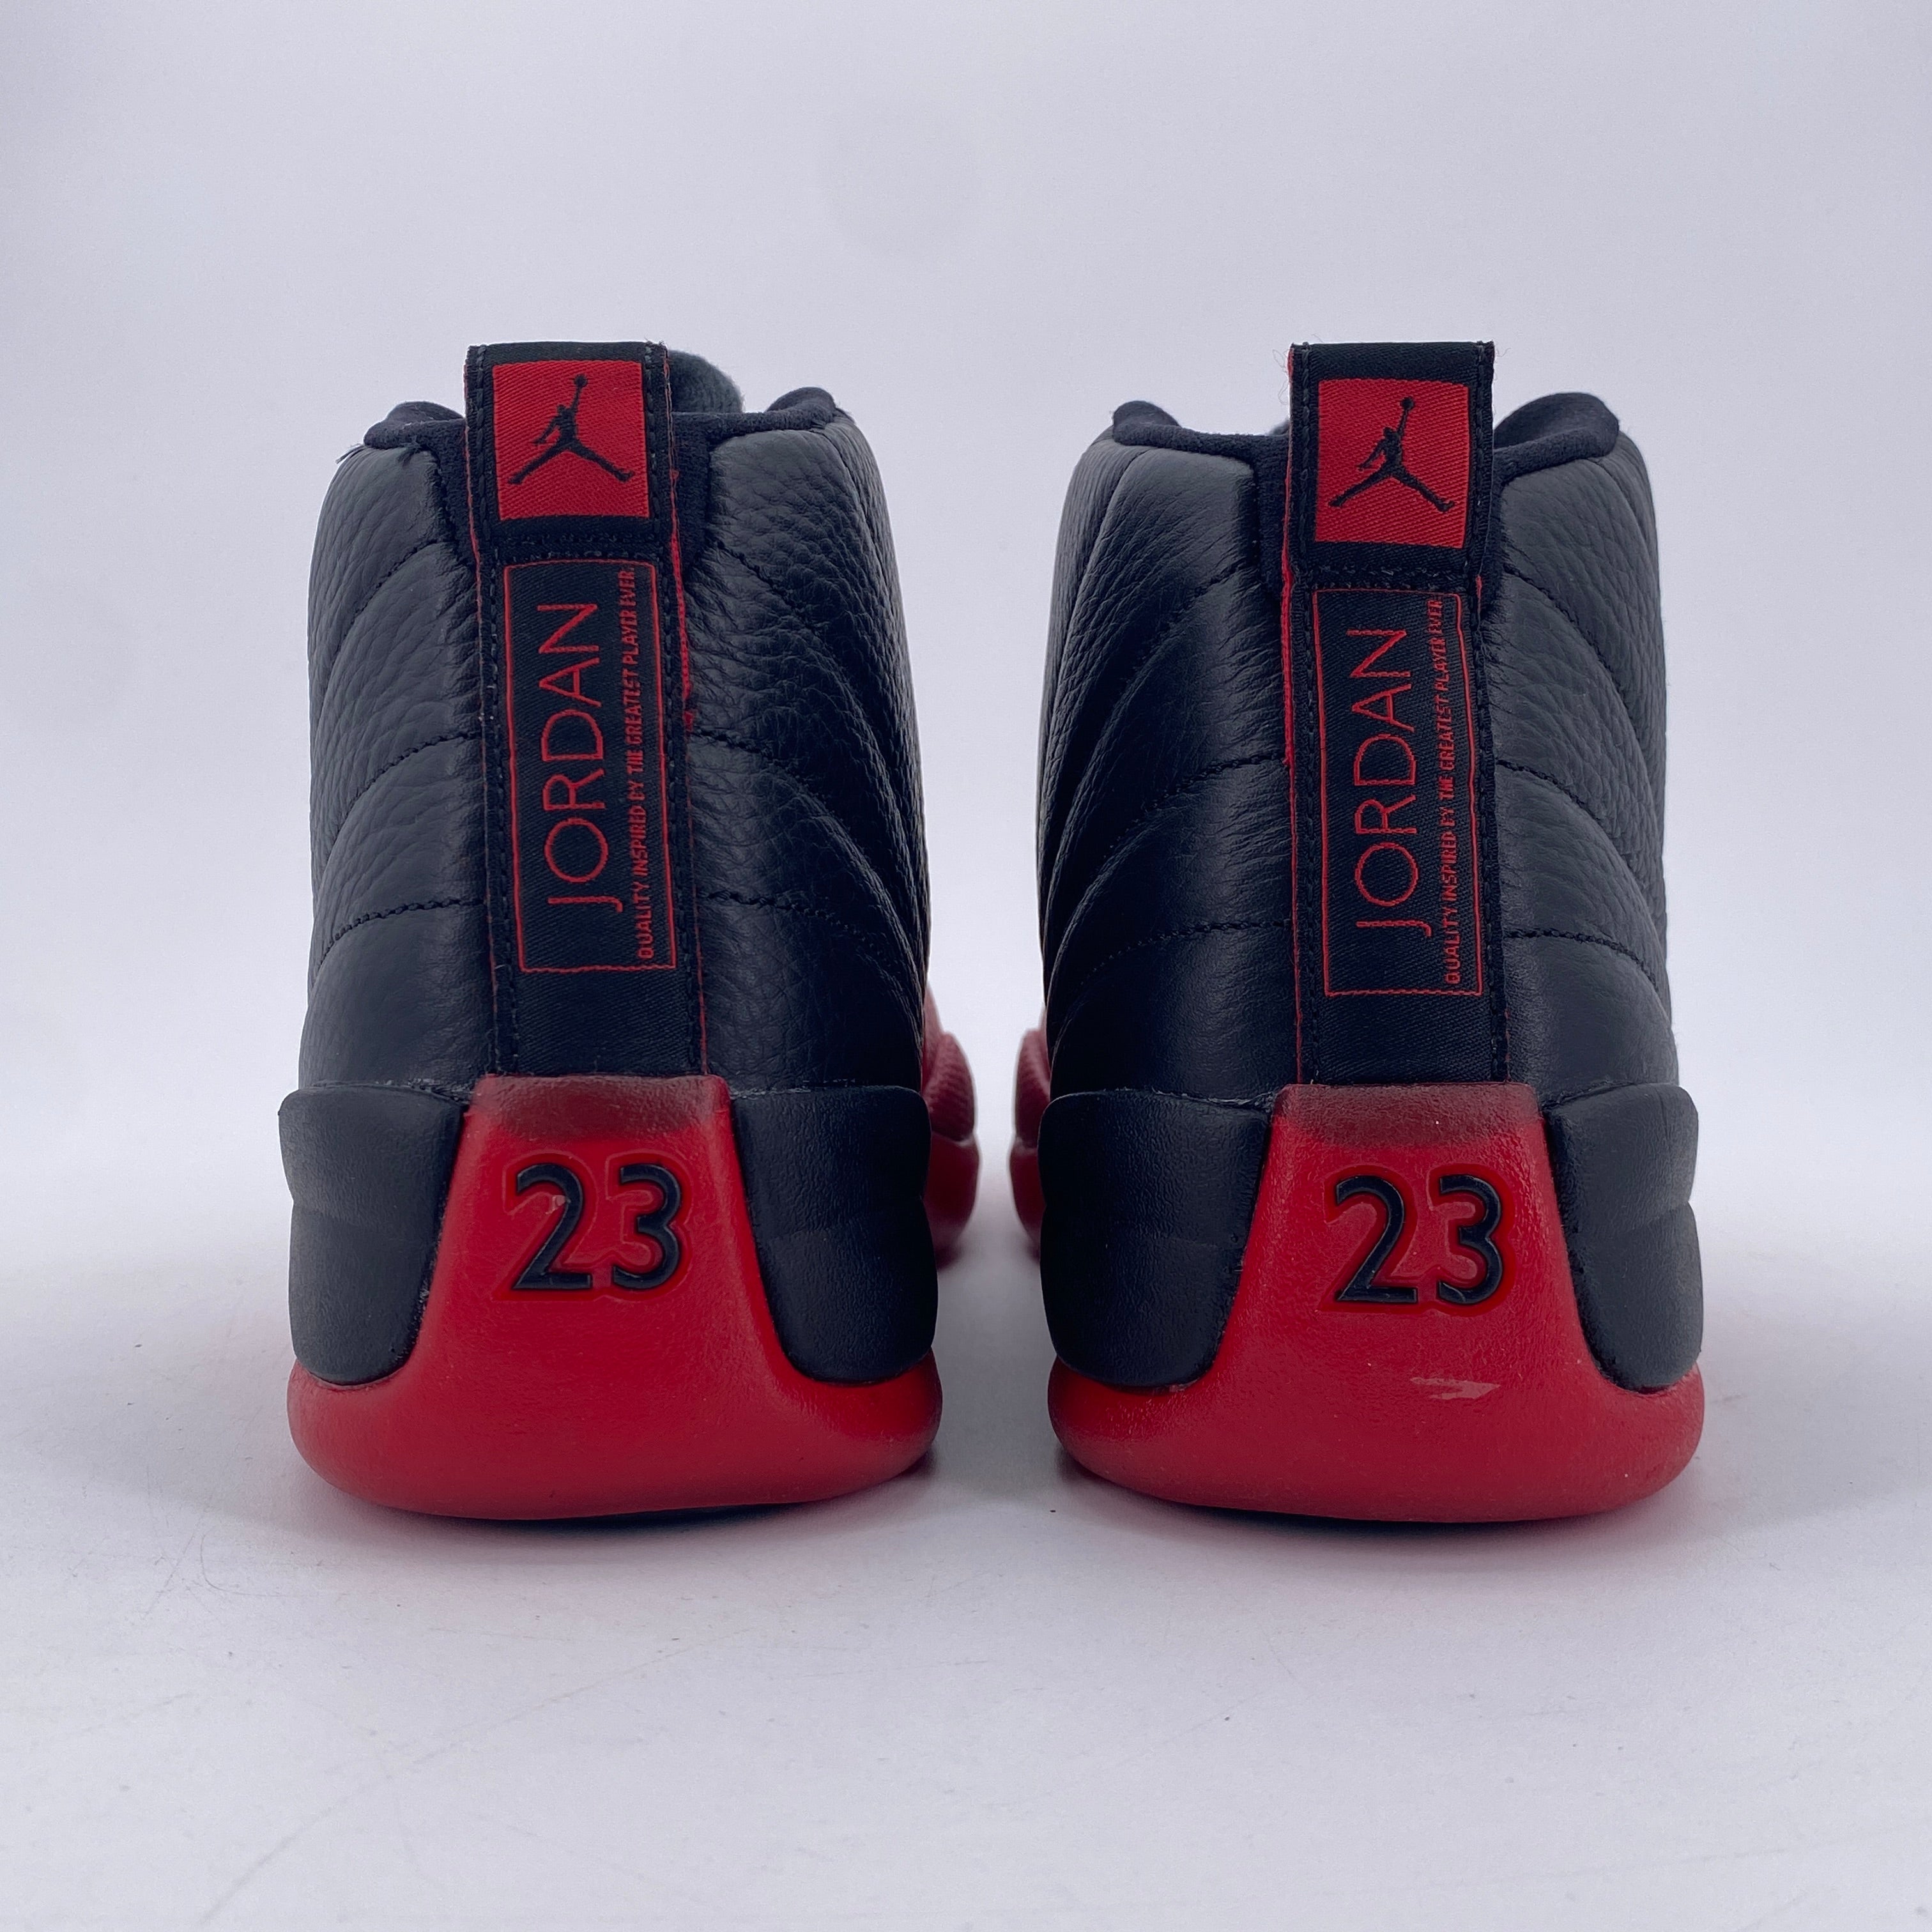 Air Jordan 12 Retro "Flu Game" 2016 New Size 10.5